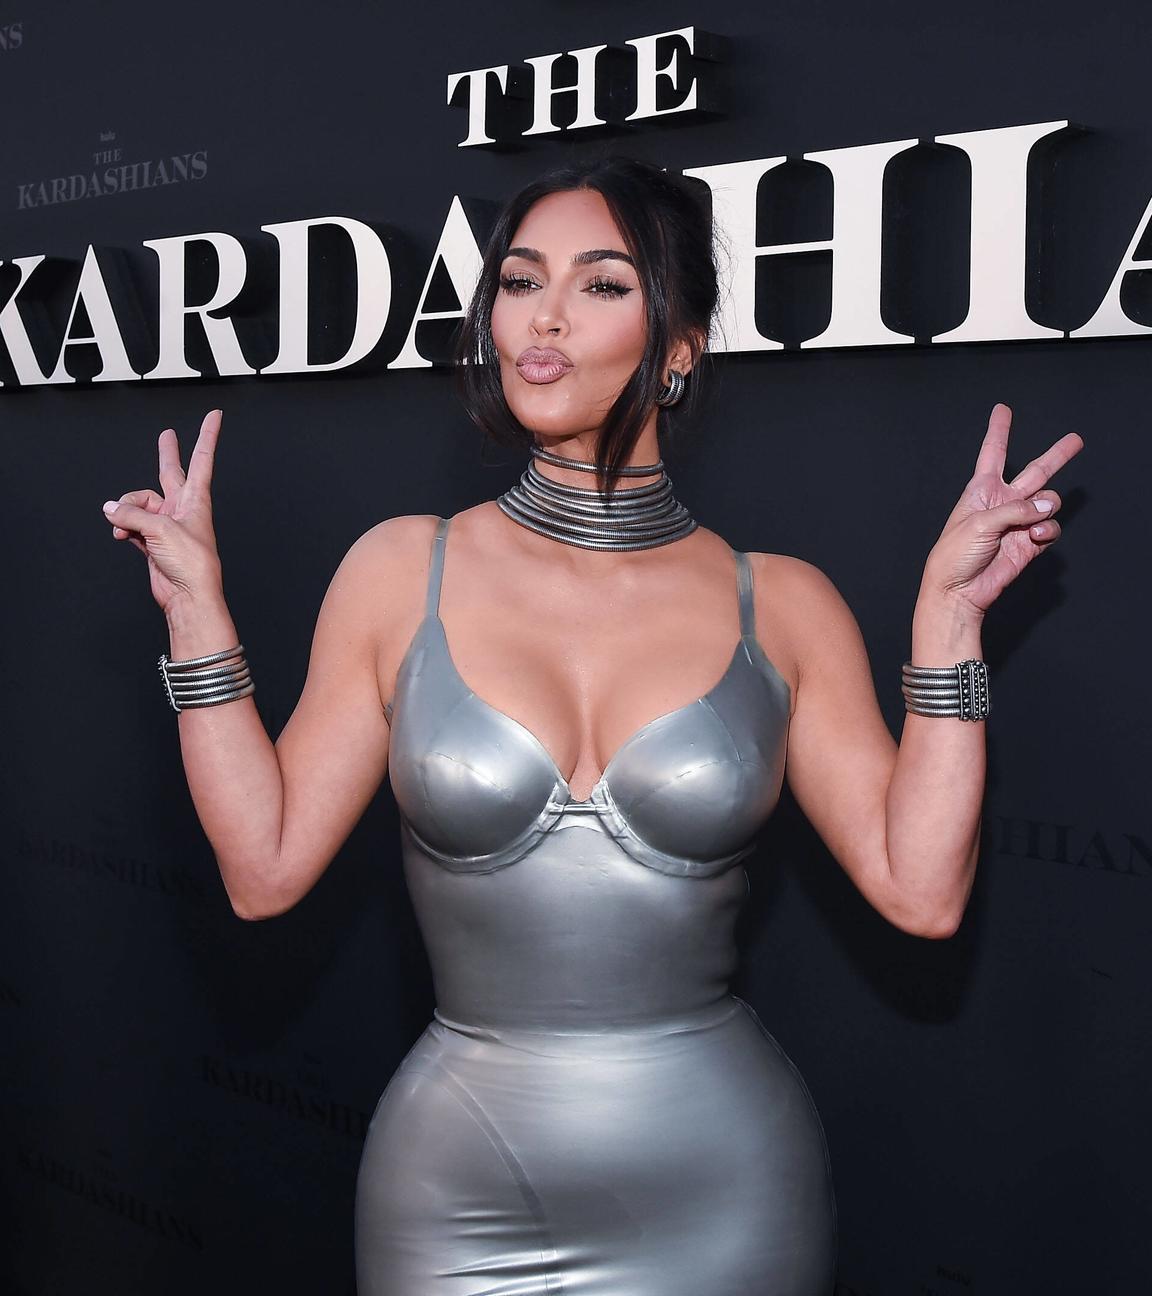 Kim Kardashian steht vor einer schwarzen Wand mit der Aufschrift "The Kardashians". Sie trägt ein silberfarbenes Kleid und silbernen Schmuck. Sie macht einen Kussmund und zeigt mit beiden Händen das Peace-Zeichen.